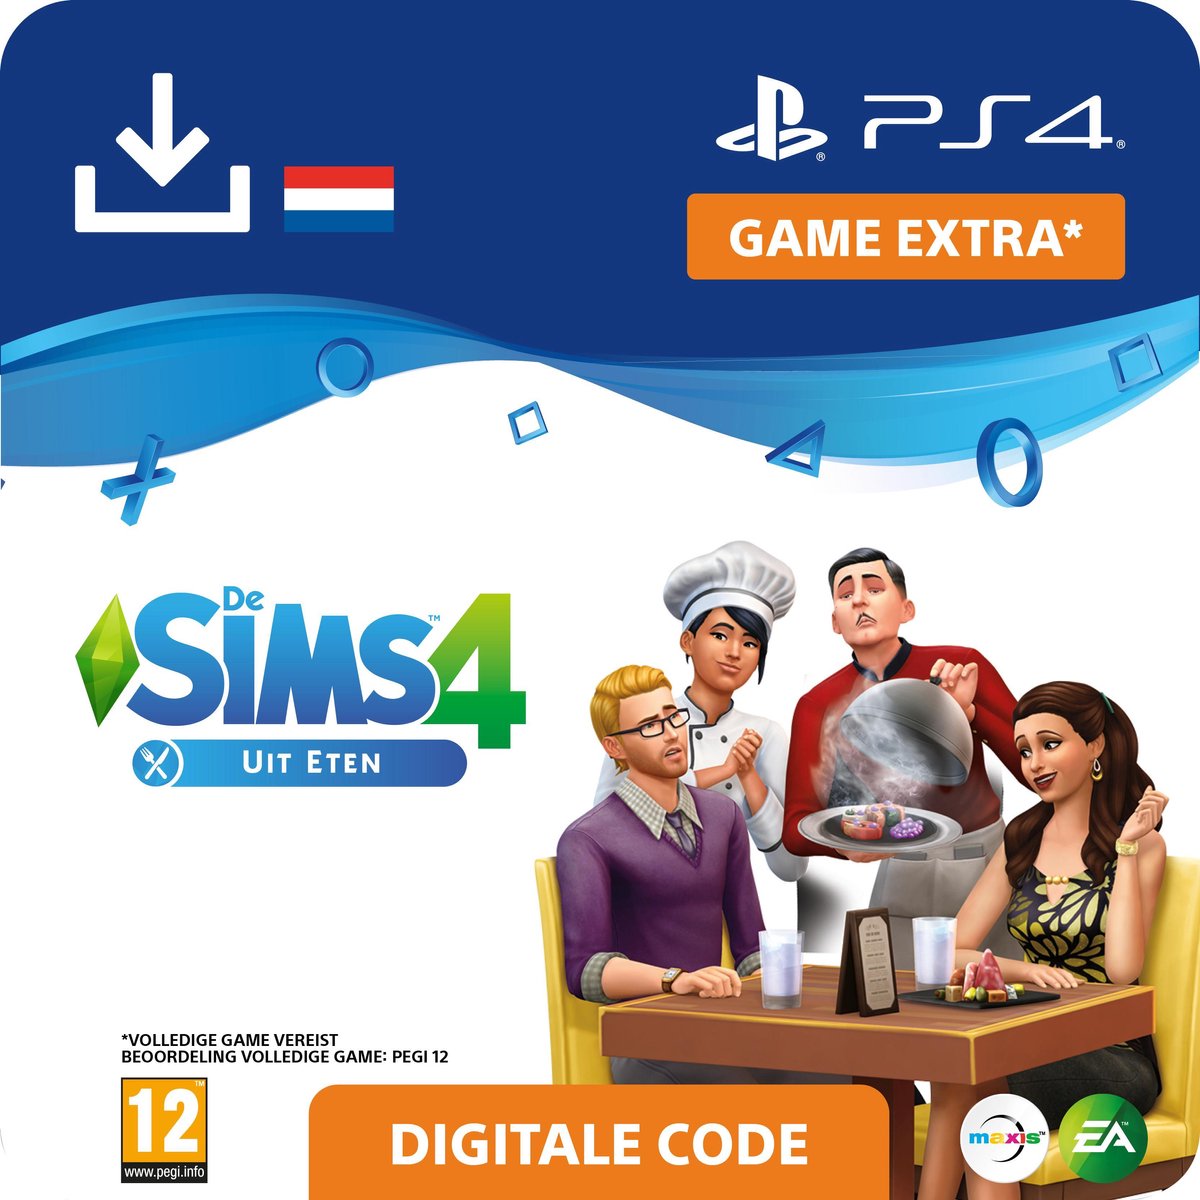 De Sims 4 - uitbreidingsset - Uit Eten - NL - PS4 download - Sony digitaal